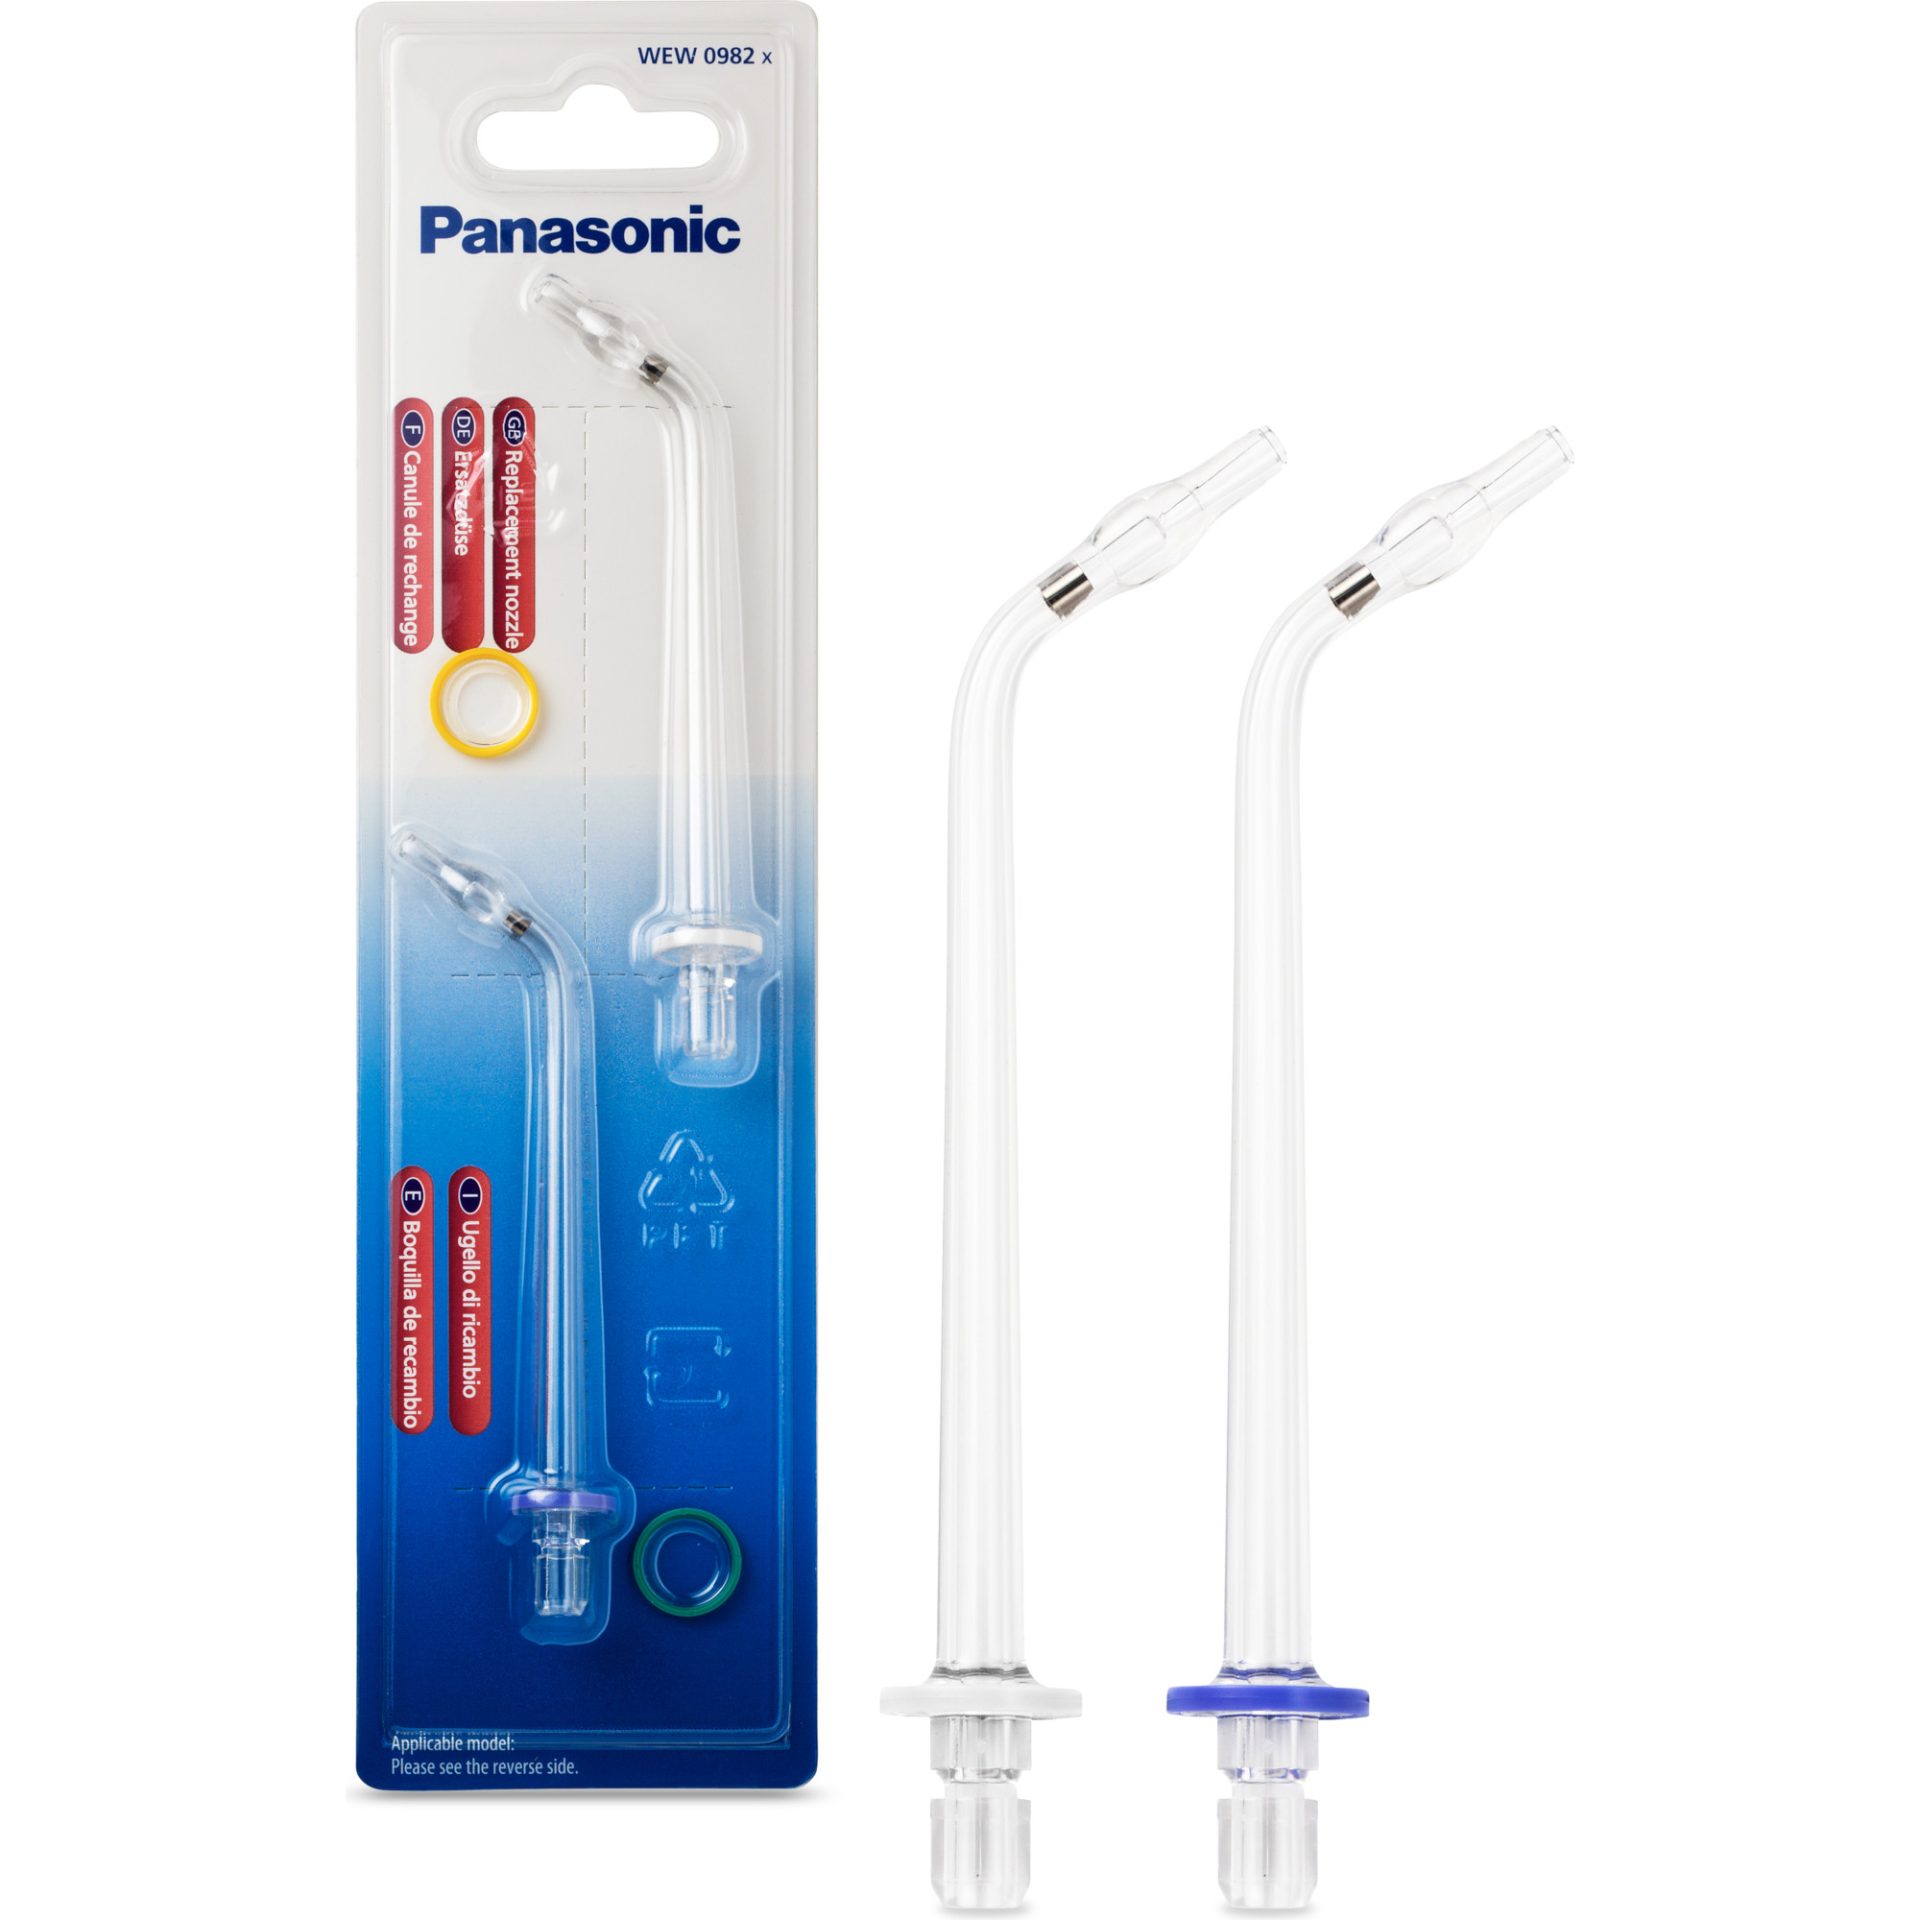 Panasonic WEW0982 náhradní trysky pro ústní sprchu (pro model EW1611), 2ks.